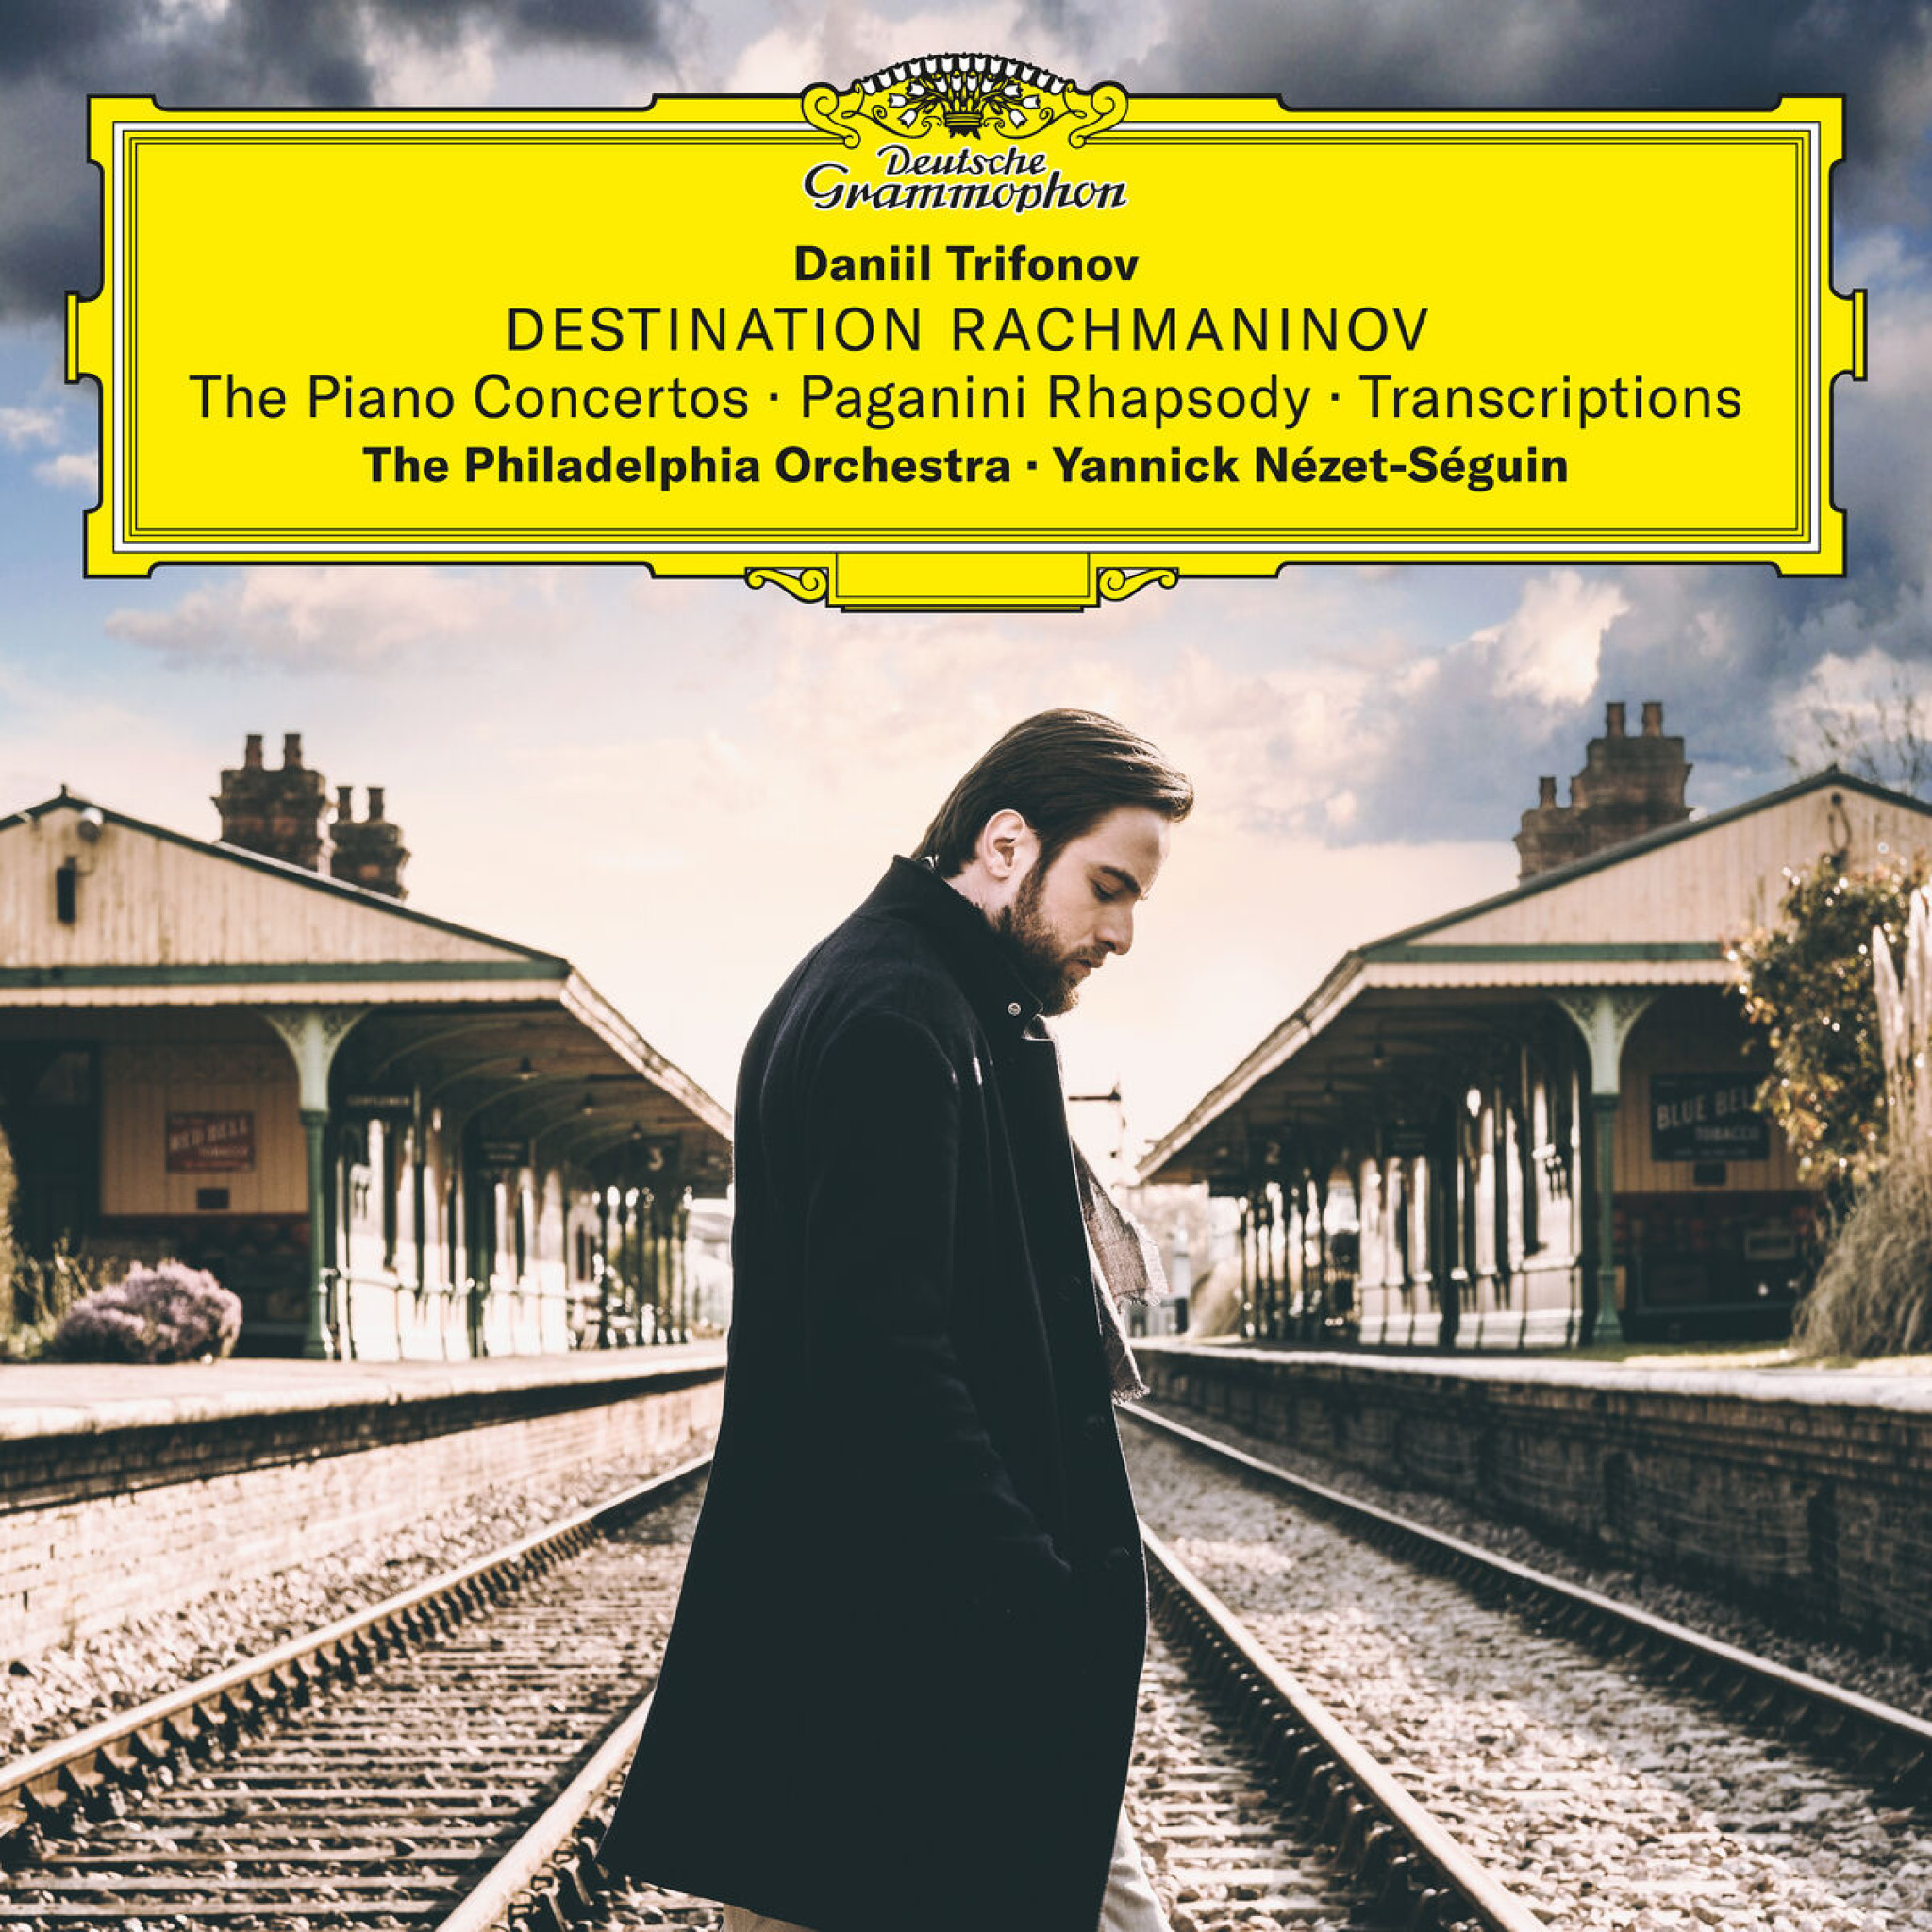 Destination Rachmaninoff: The Piano Concertos & Transcriptions